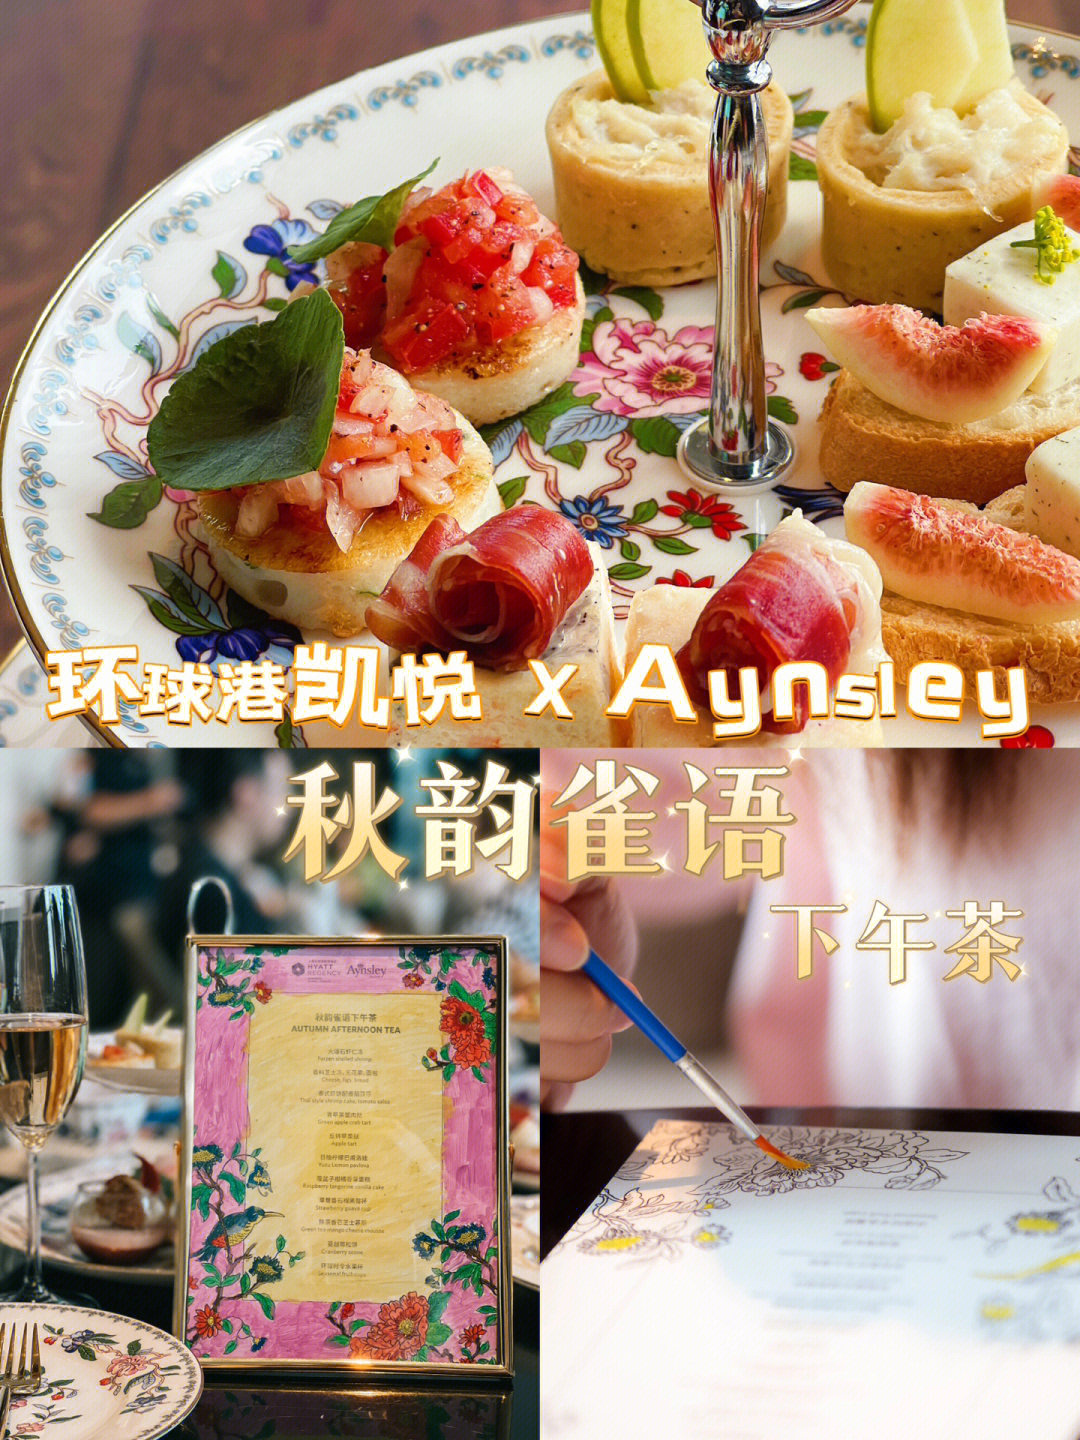 上海美食英伦格调的秋韵雀语下午茶